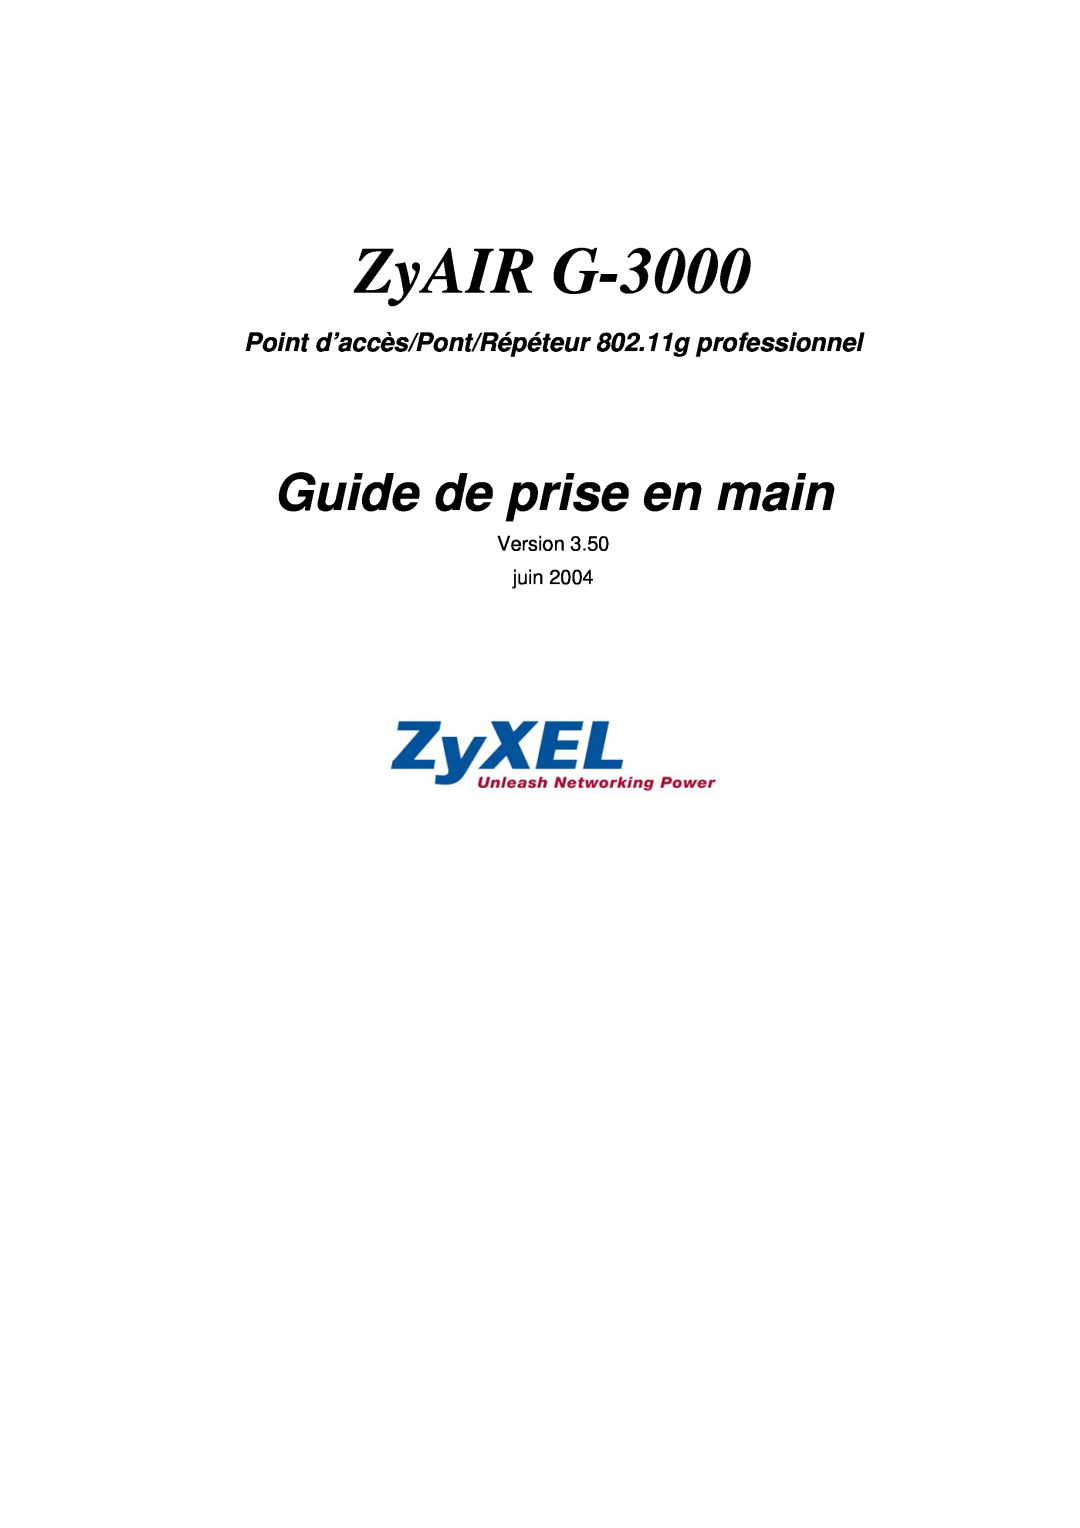 ZyXEL Communications Rpteur professional manual ZyAIR G-3000, Guide de prise en main, Version juin 